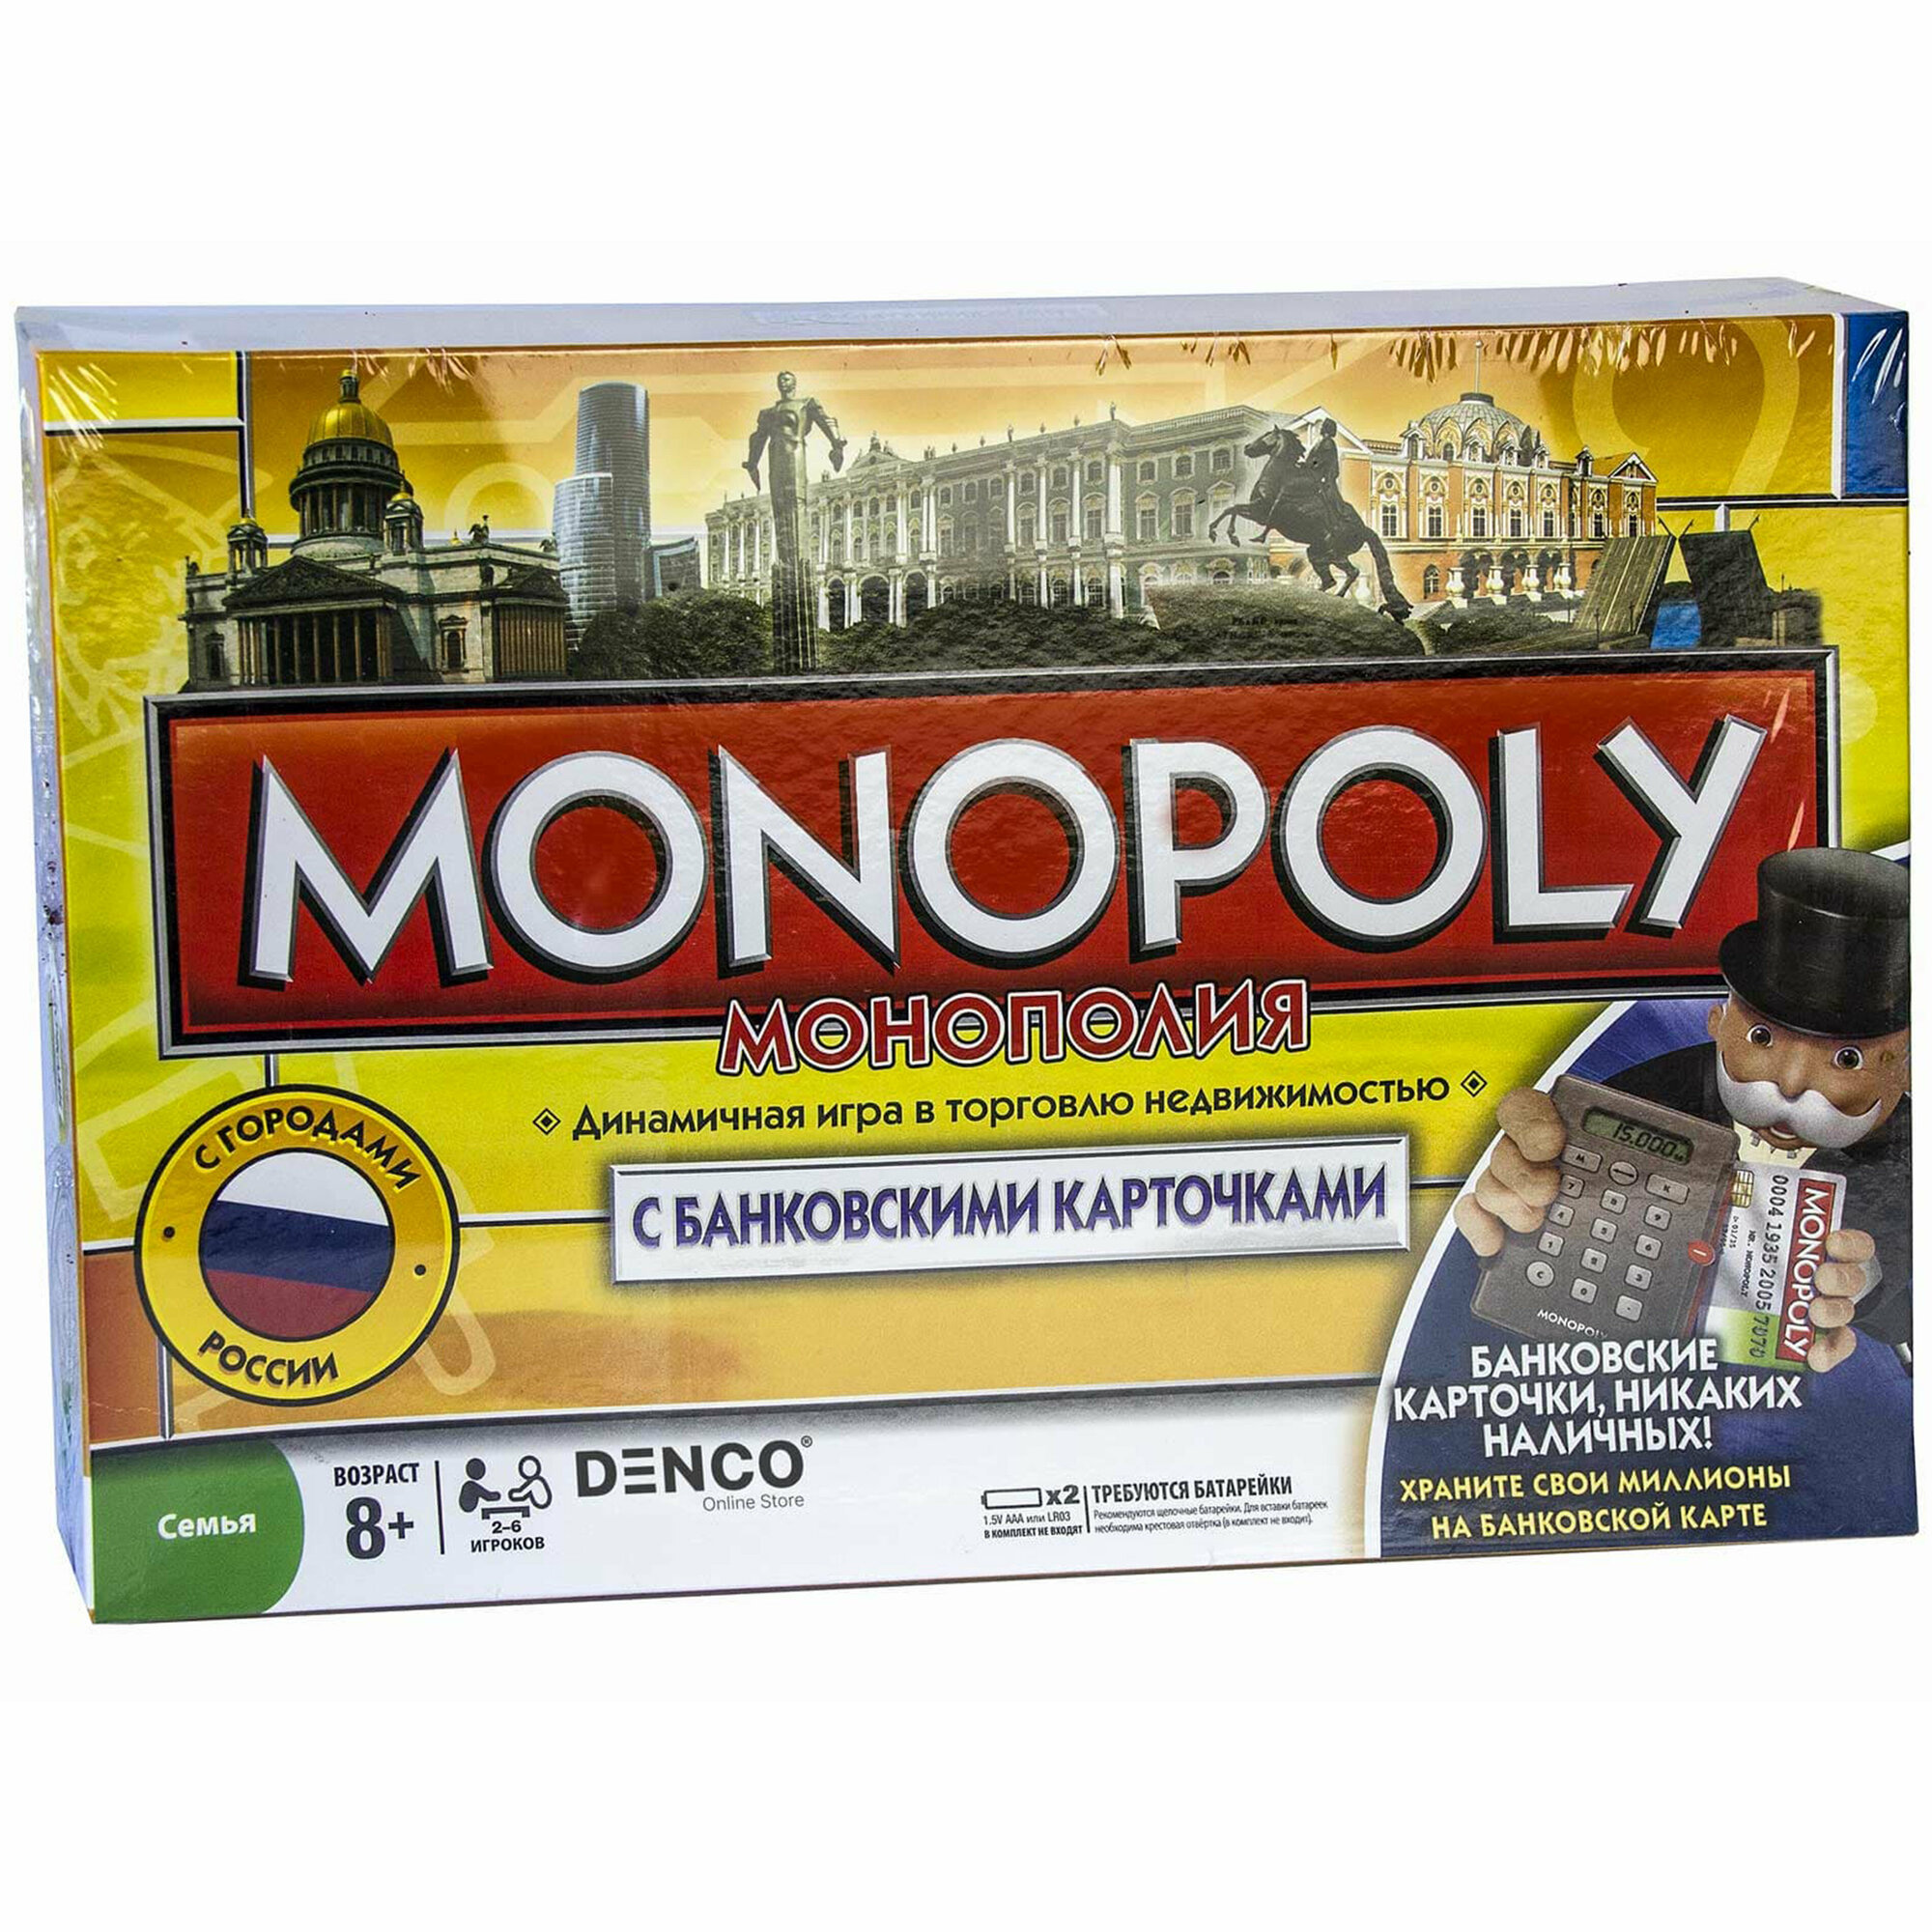 Настольная игра «Монополия» с Банковскими карточками и Терминалом (с городами России)